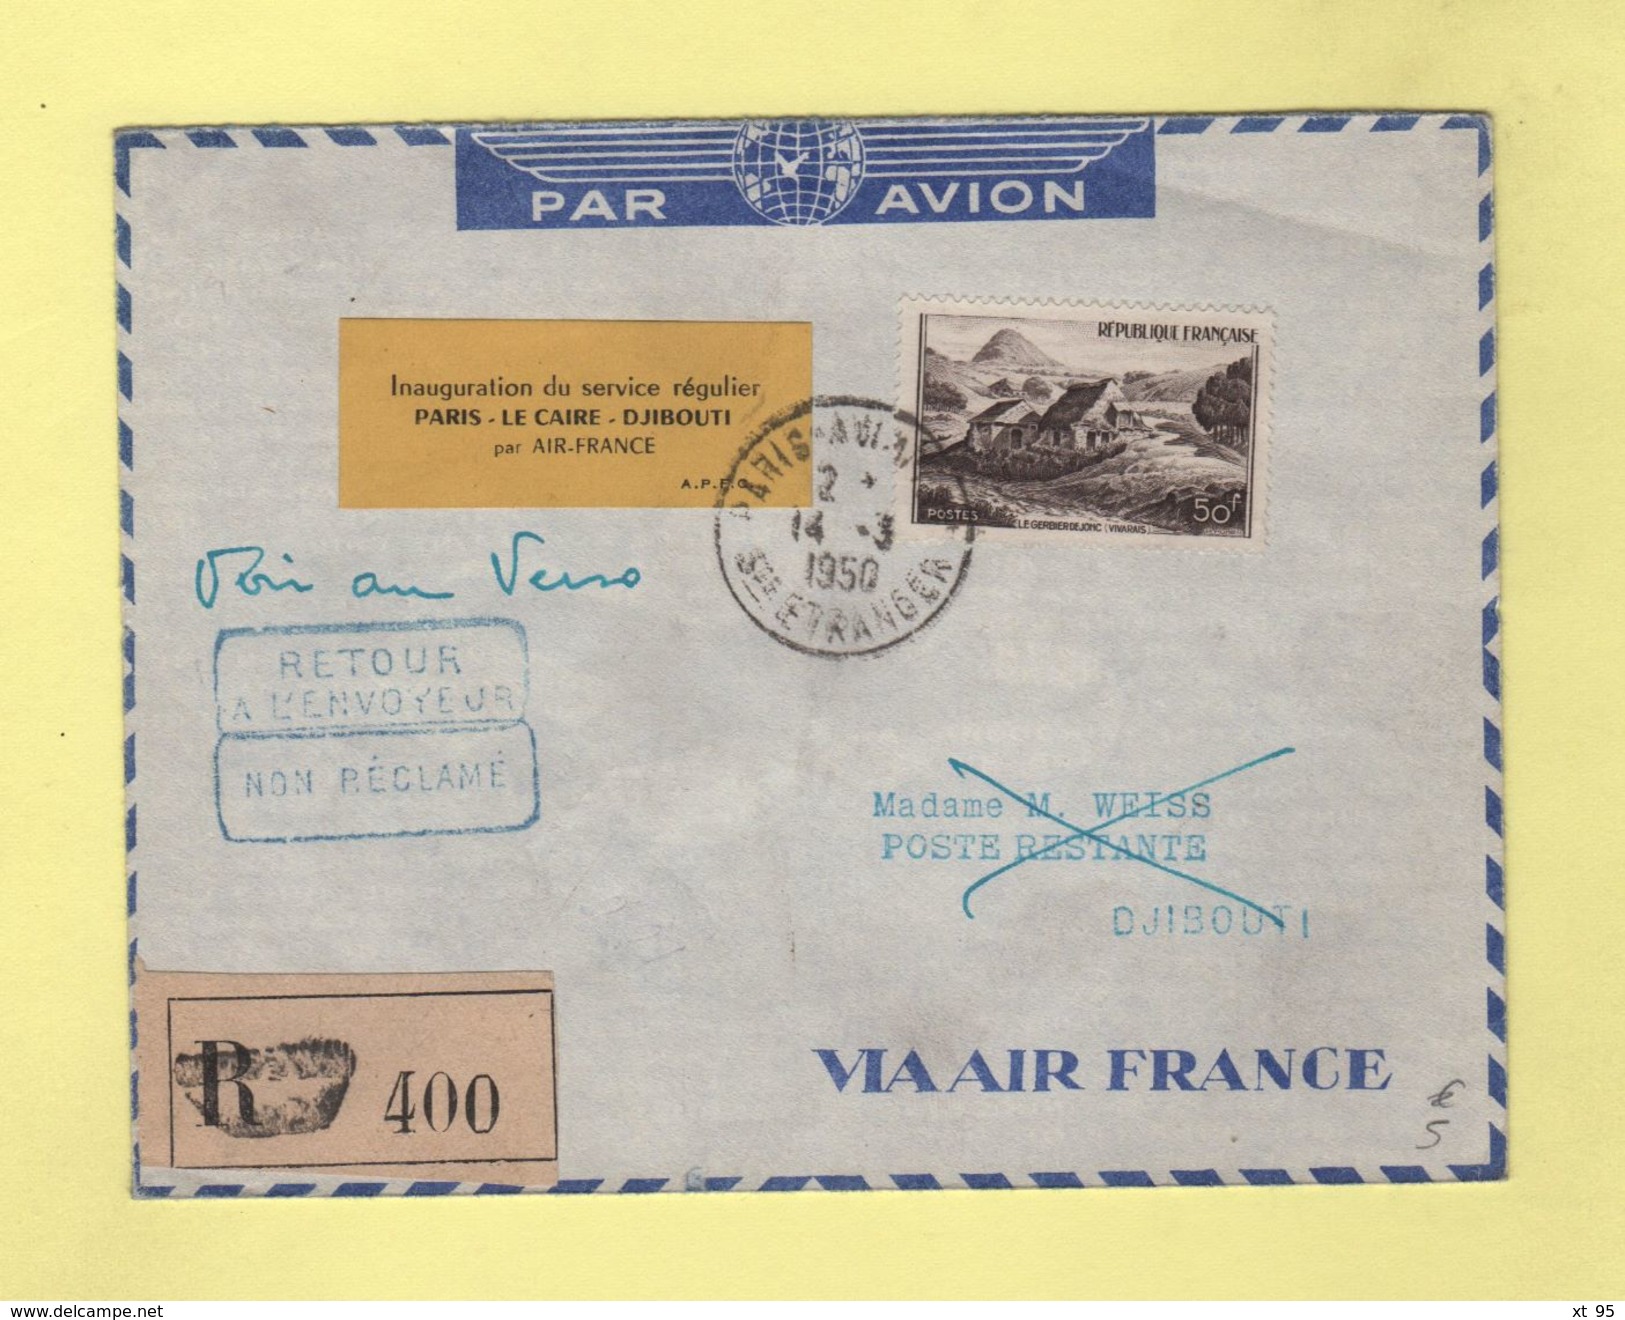 Inauguration Du Service Régulier Paris Le Caire Djibouti Par Air France - 14-3-1950 - 1960-.... Lettres & Documents